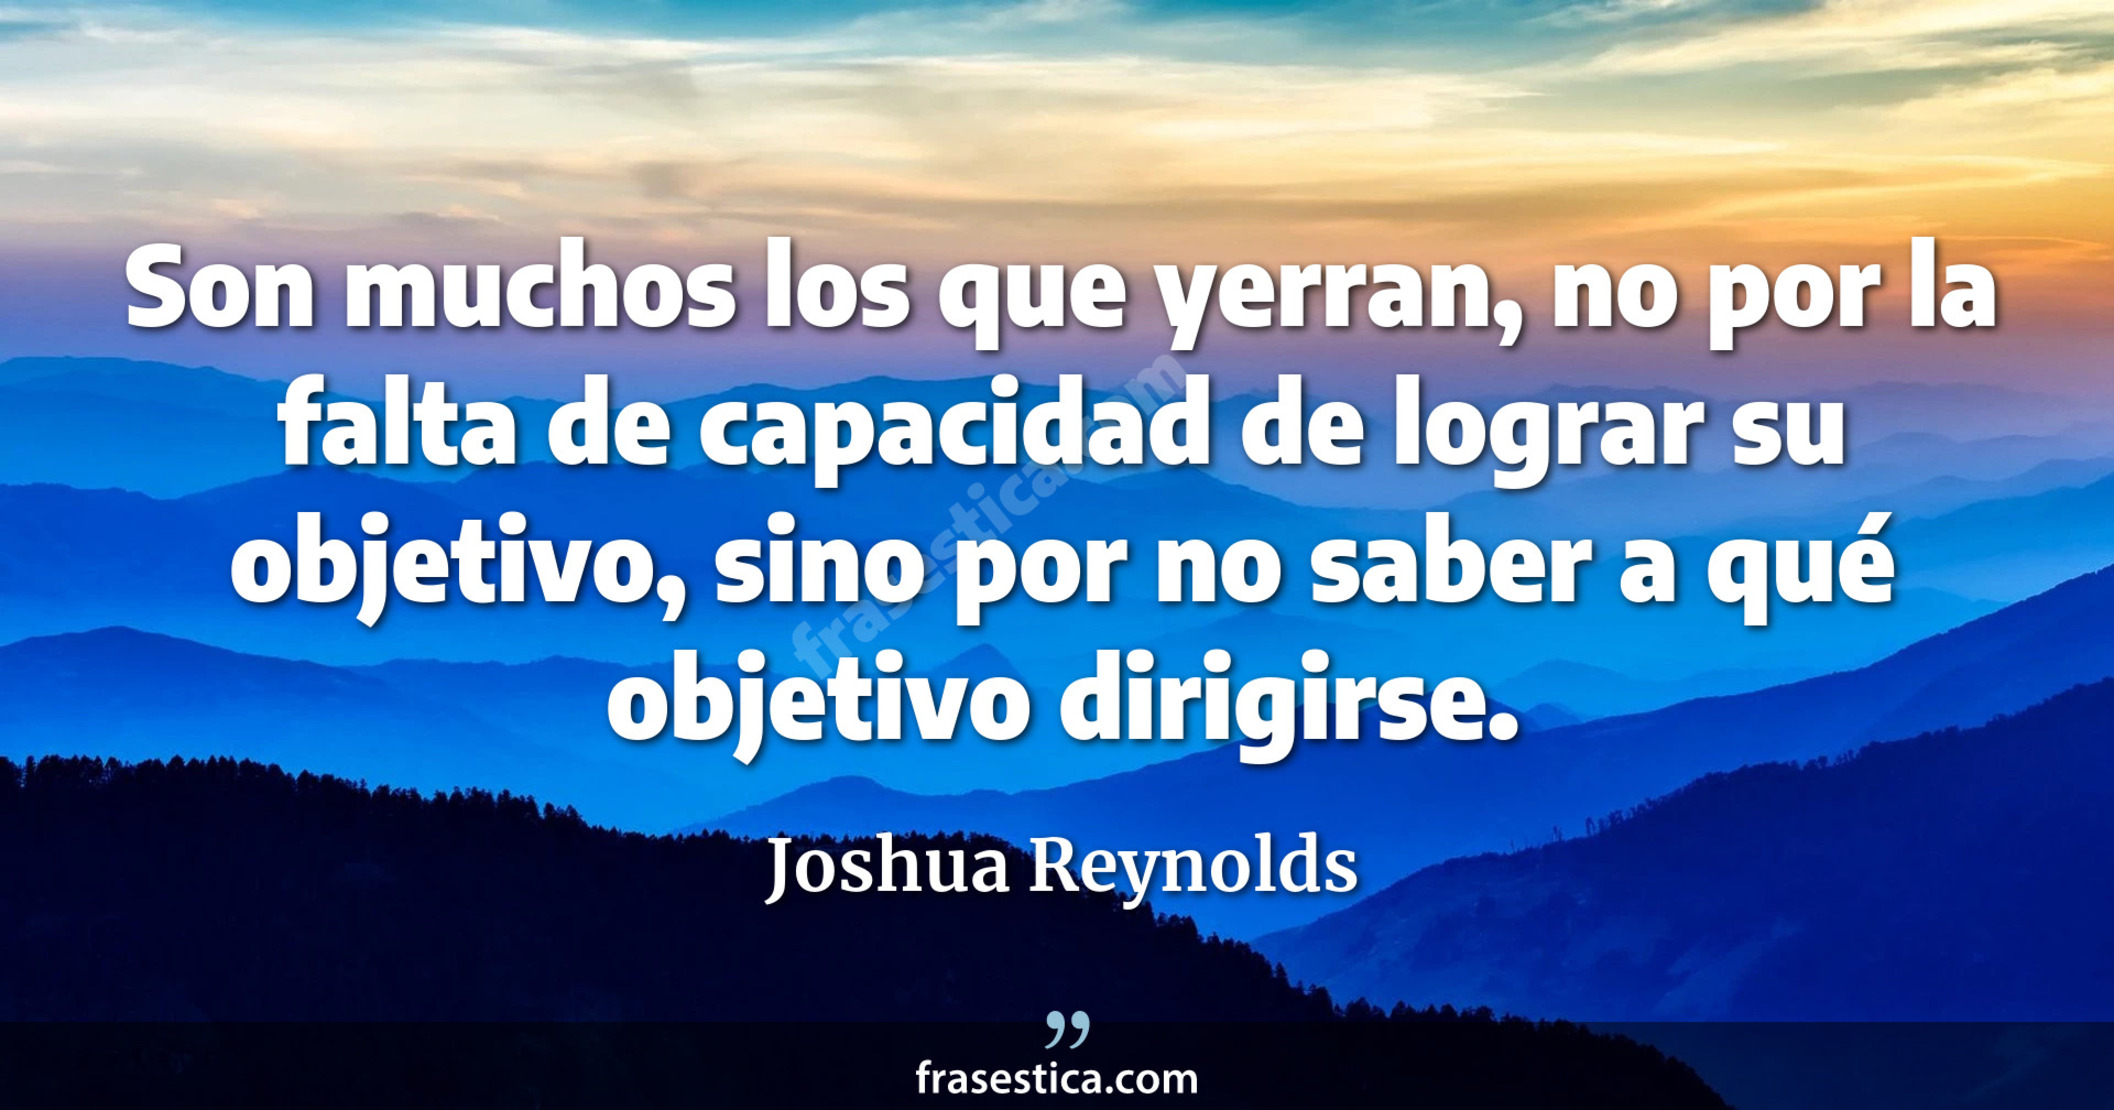 Son muchos los que yerran, no por la falta de capacidad de lograr su objetivo, sino por no saber a qué objetivo dirigirse. - Joshua Reynolds